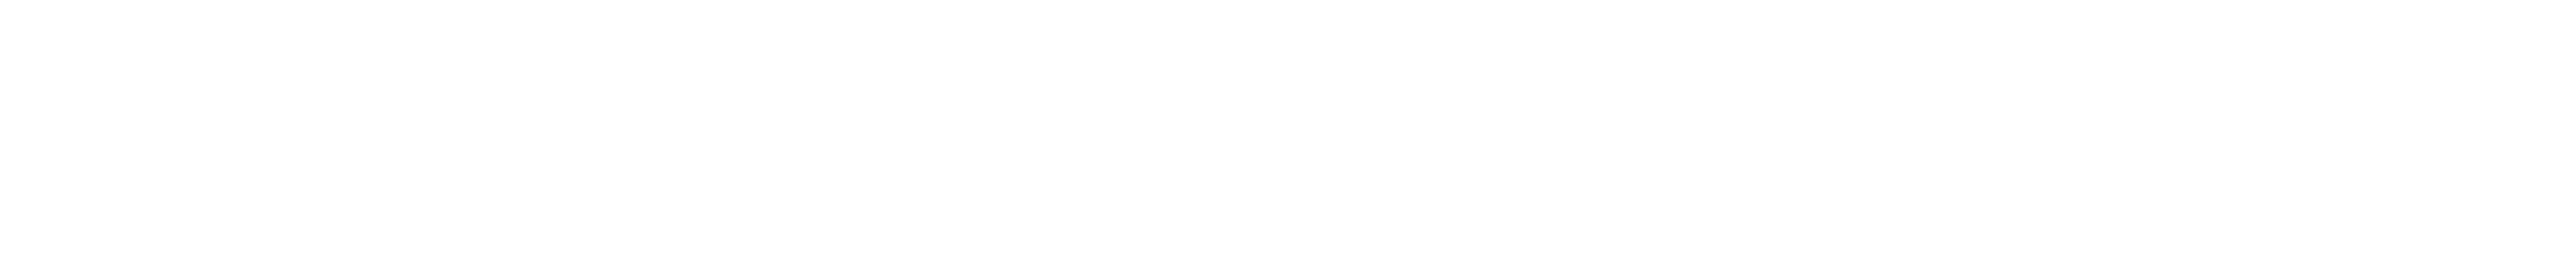 Samya Studios white logo